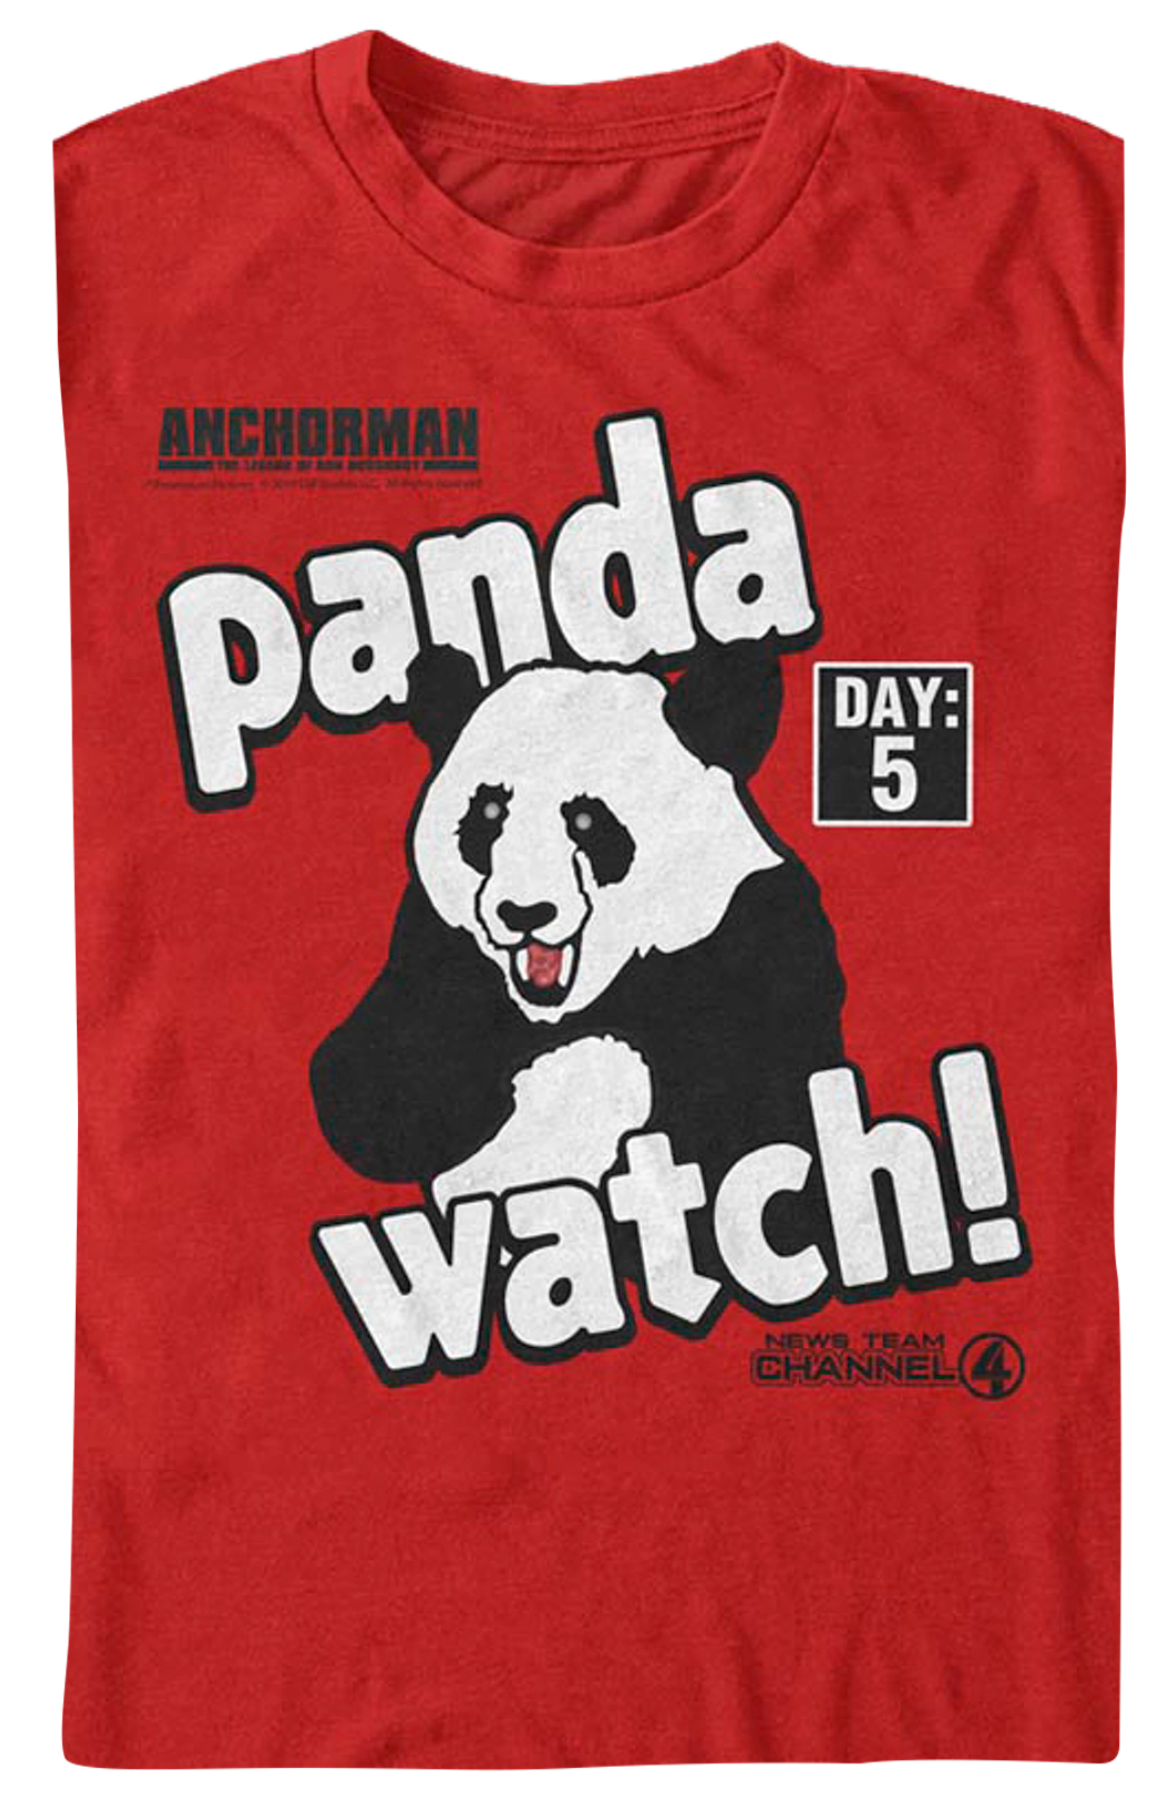 Panda Watch Anchorman T-Shirt